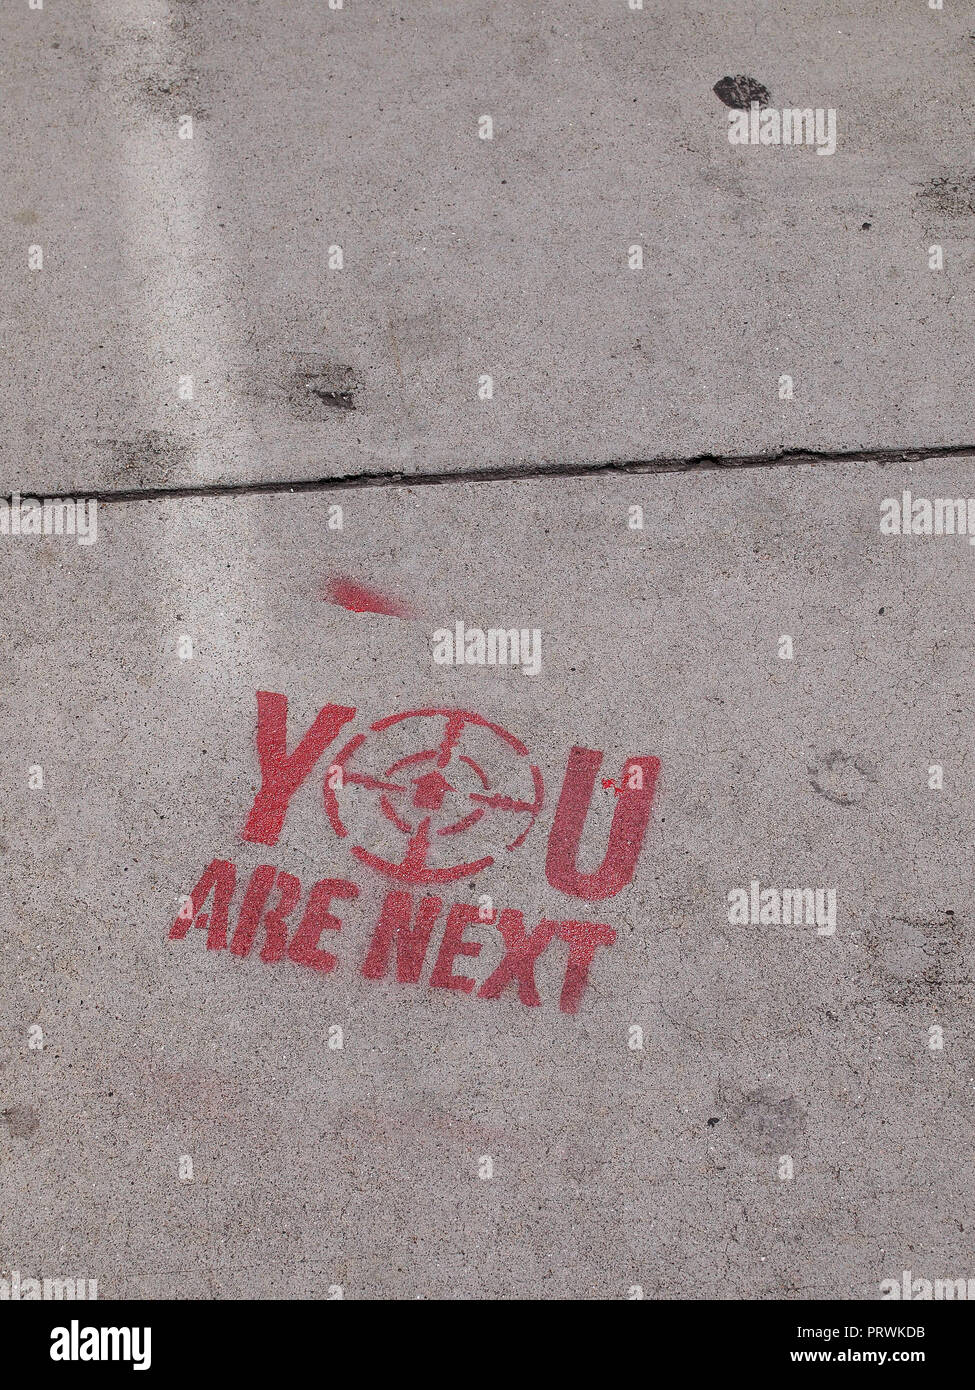 Sie sind die nächsten, Graffiti auf einem San Francisco stenciled, Gehweg Stockfoto